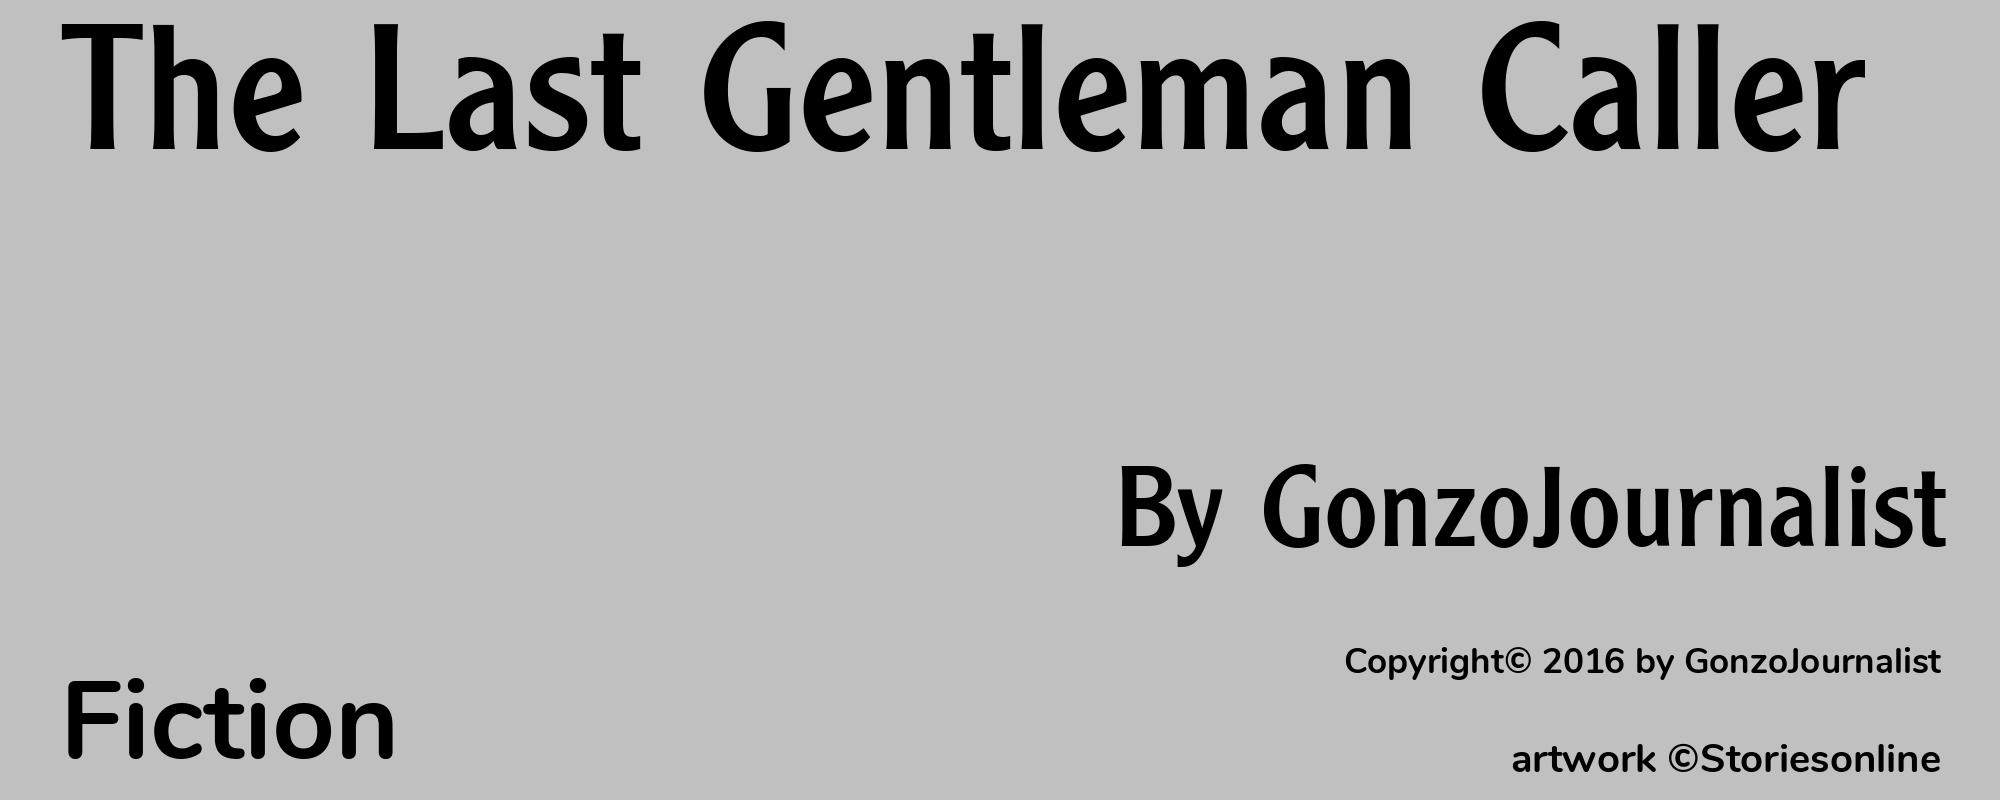 The Last Gentleman Caller - Cover